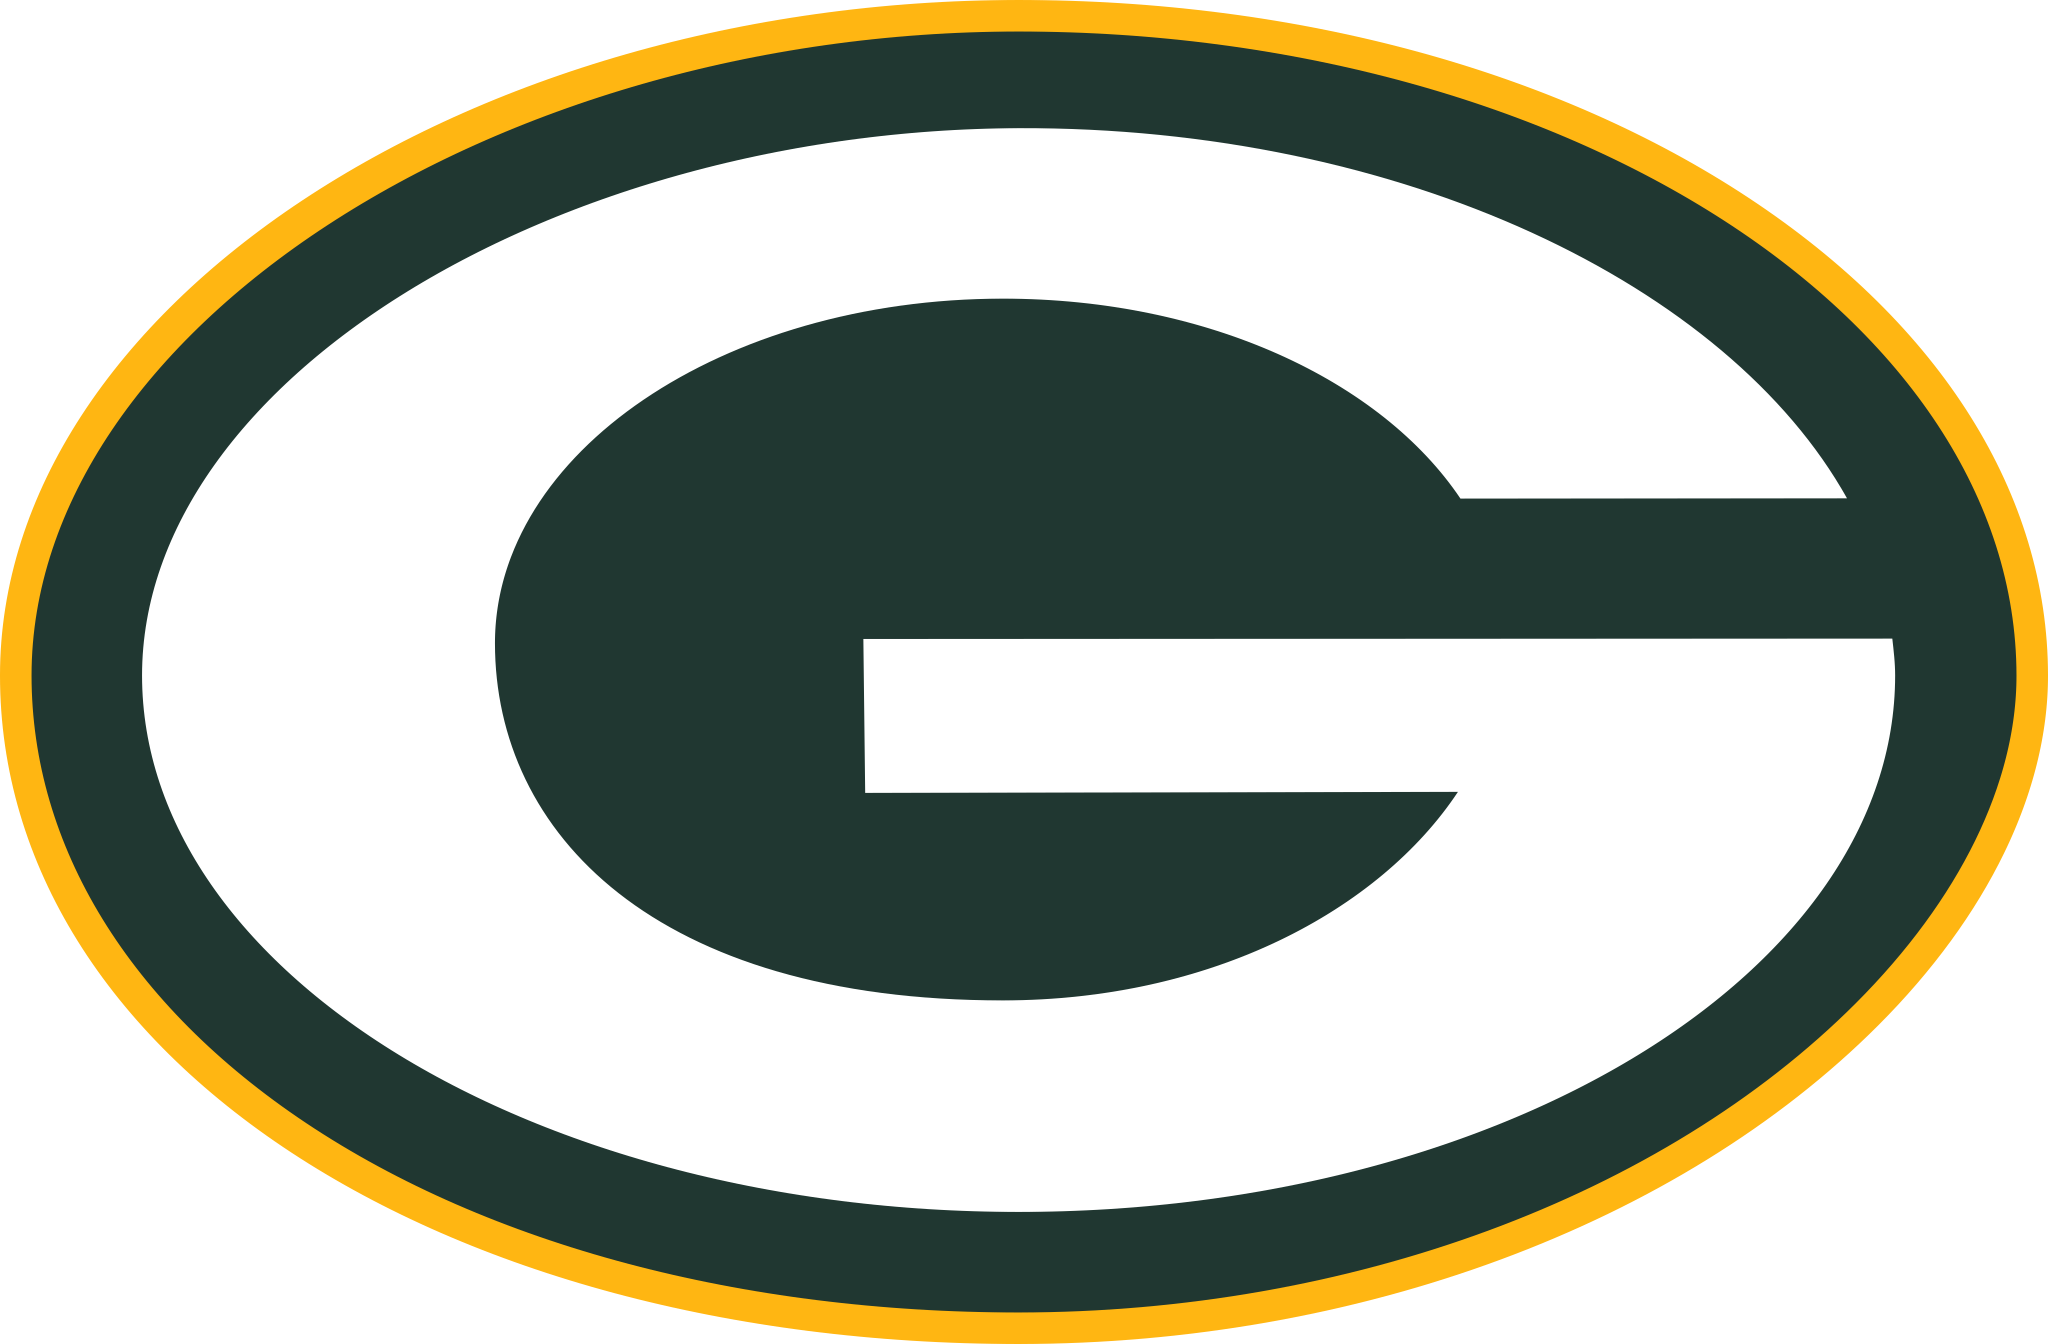 Green Bay Packers Logo Png E Vetor Download De Logo